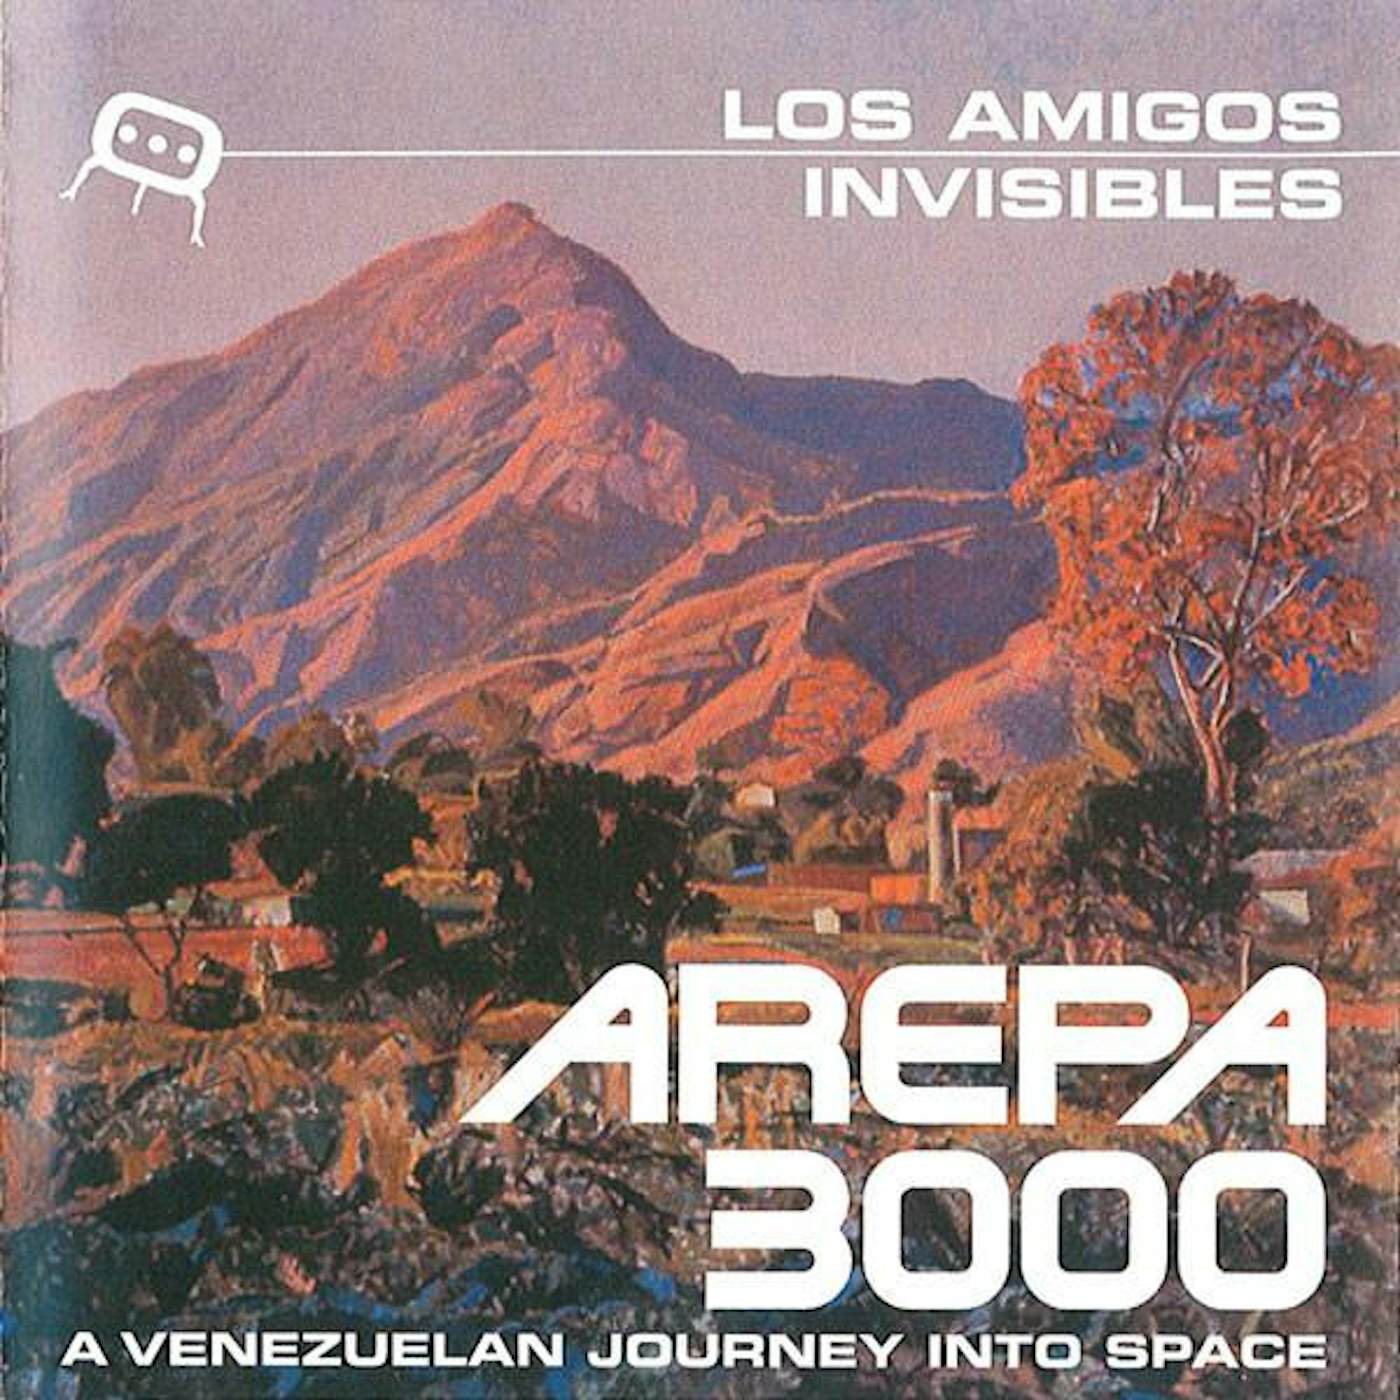 Los Amigos Invisibles AREPA 3000 CD